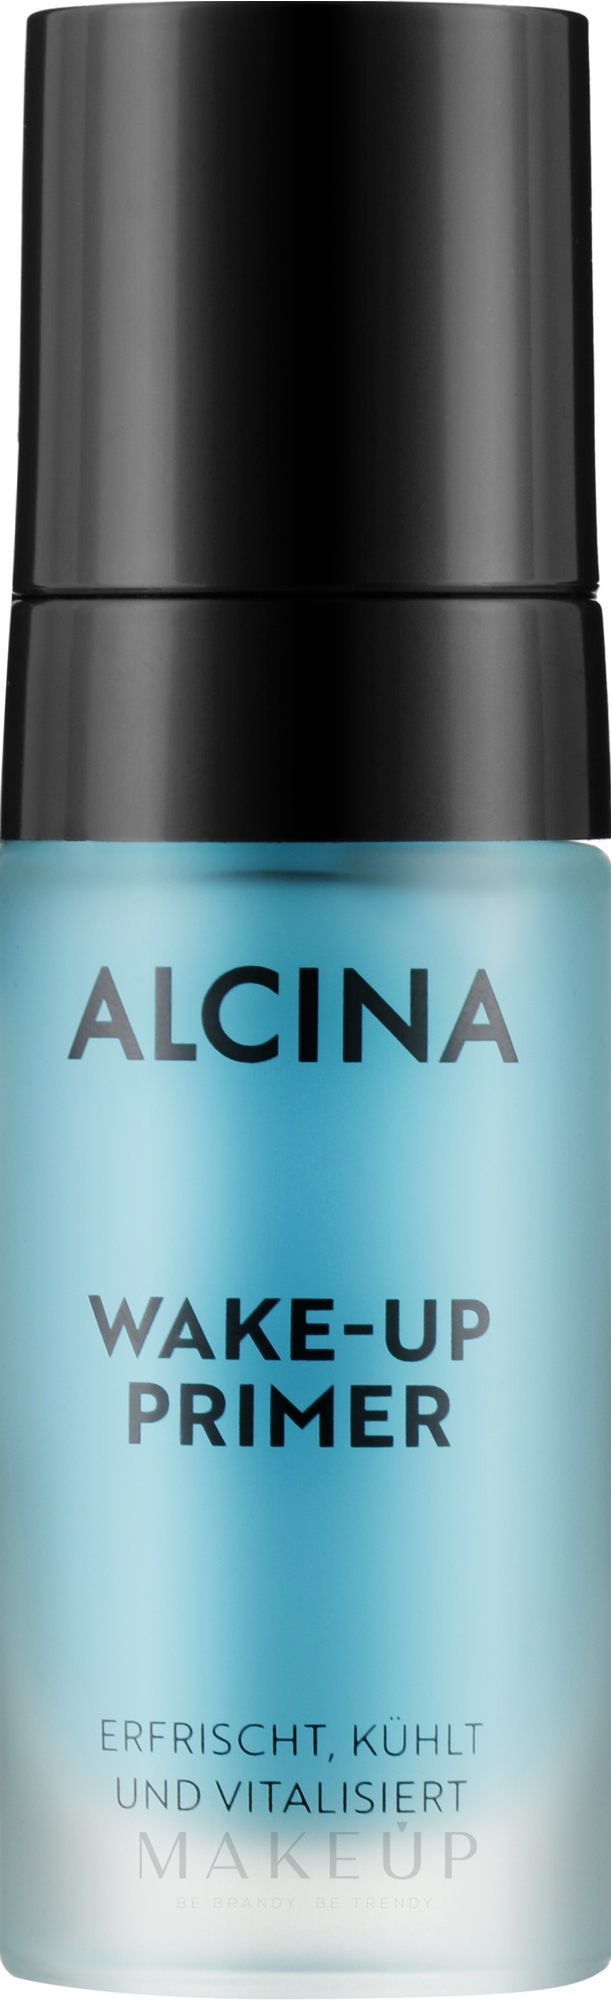 Erfrischender kühlender und vitalisierender Gesichtsprimer - Alcina Wake-up Primer — Bild 17 ml